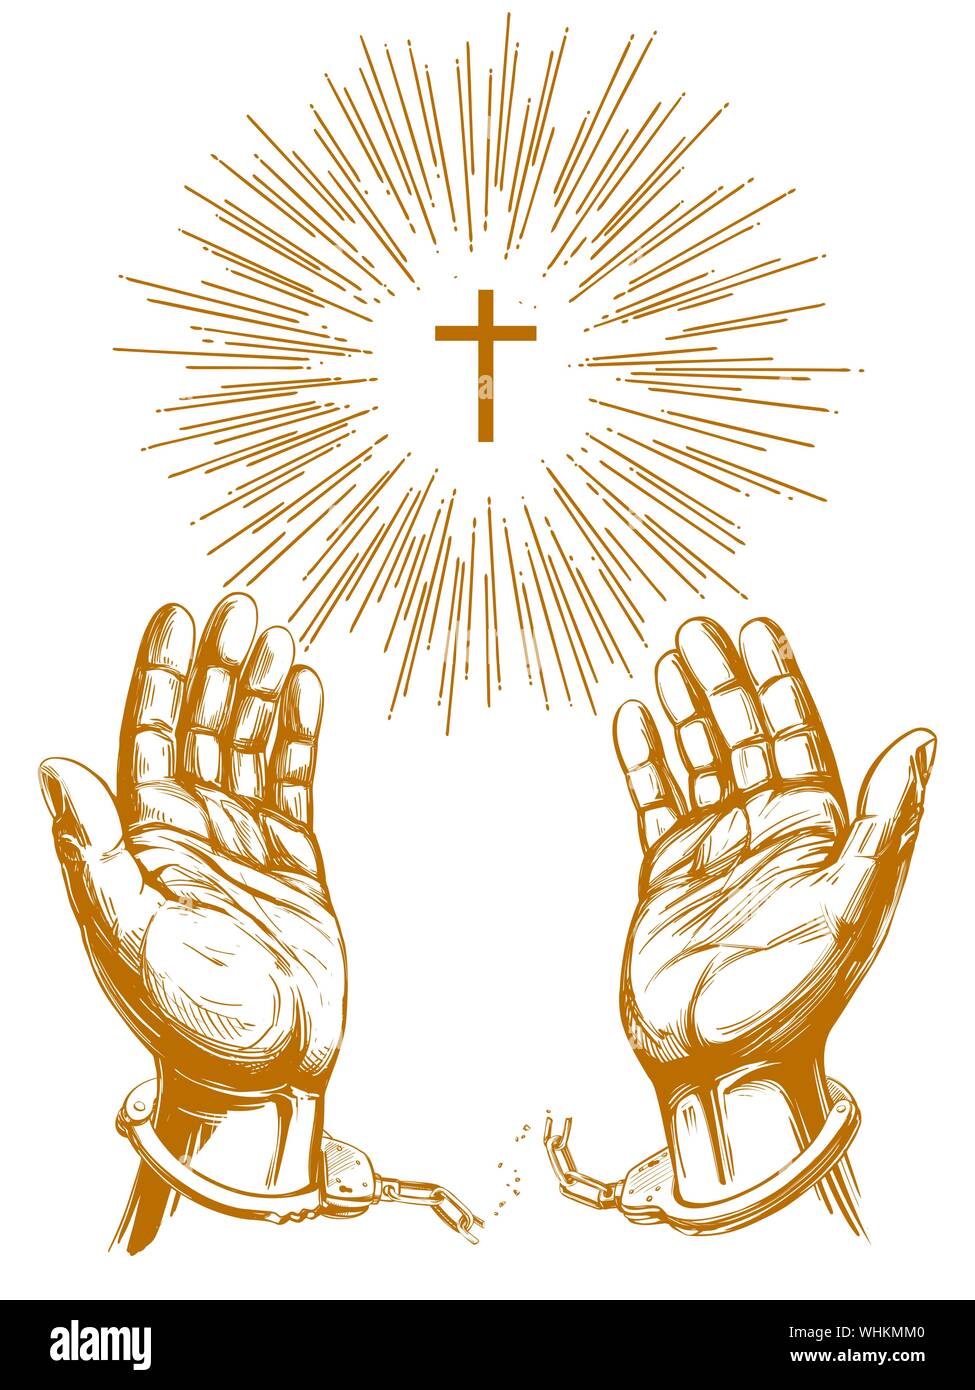 Christliches symbol Kreuz mit hellen Strahlen, die Hände brechen die Kette  Handschellen, ein Symbol der Freiheit und der Vergebung das Symbol Hand  gezeichnet Vektor-illustration sket Stock-Vektorgrafik - Alamy